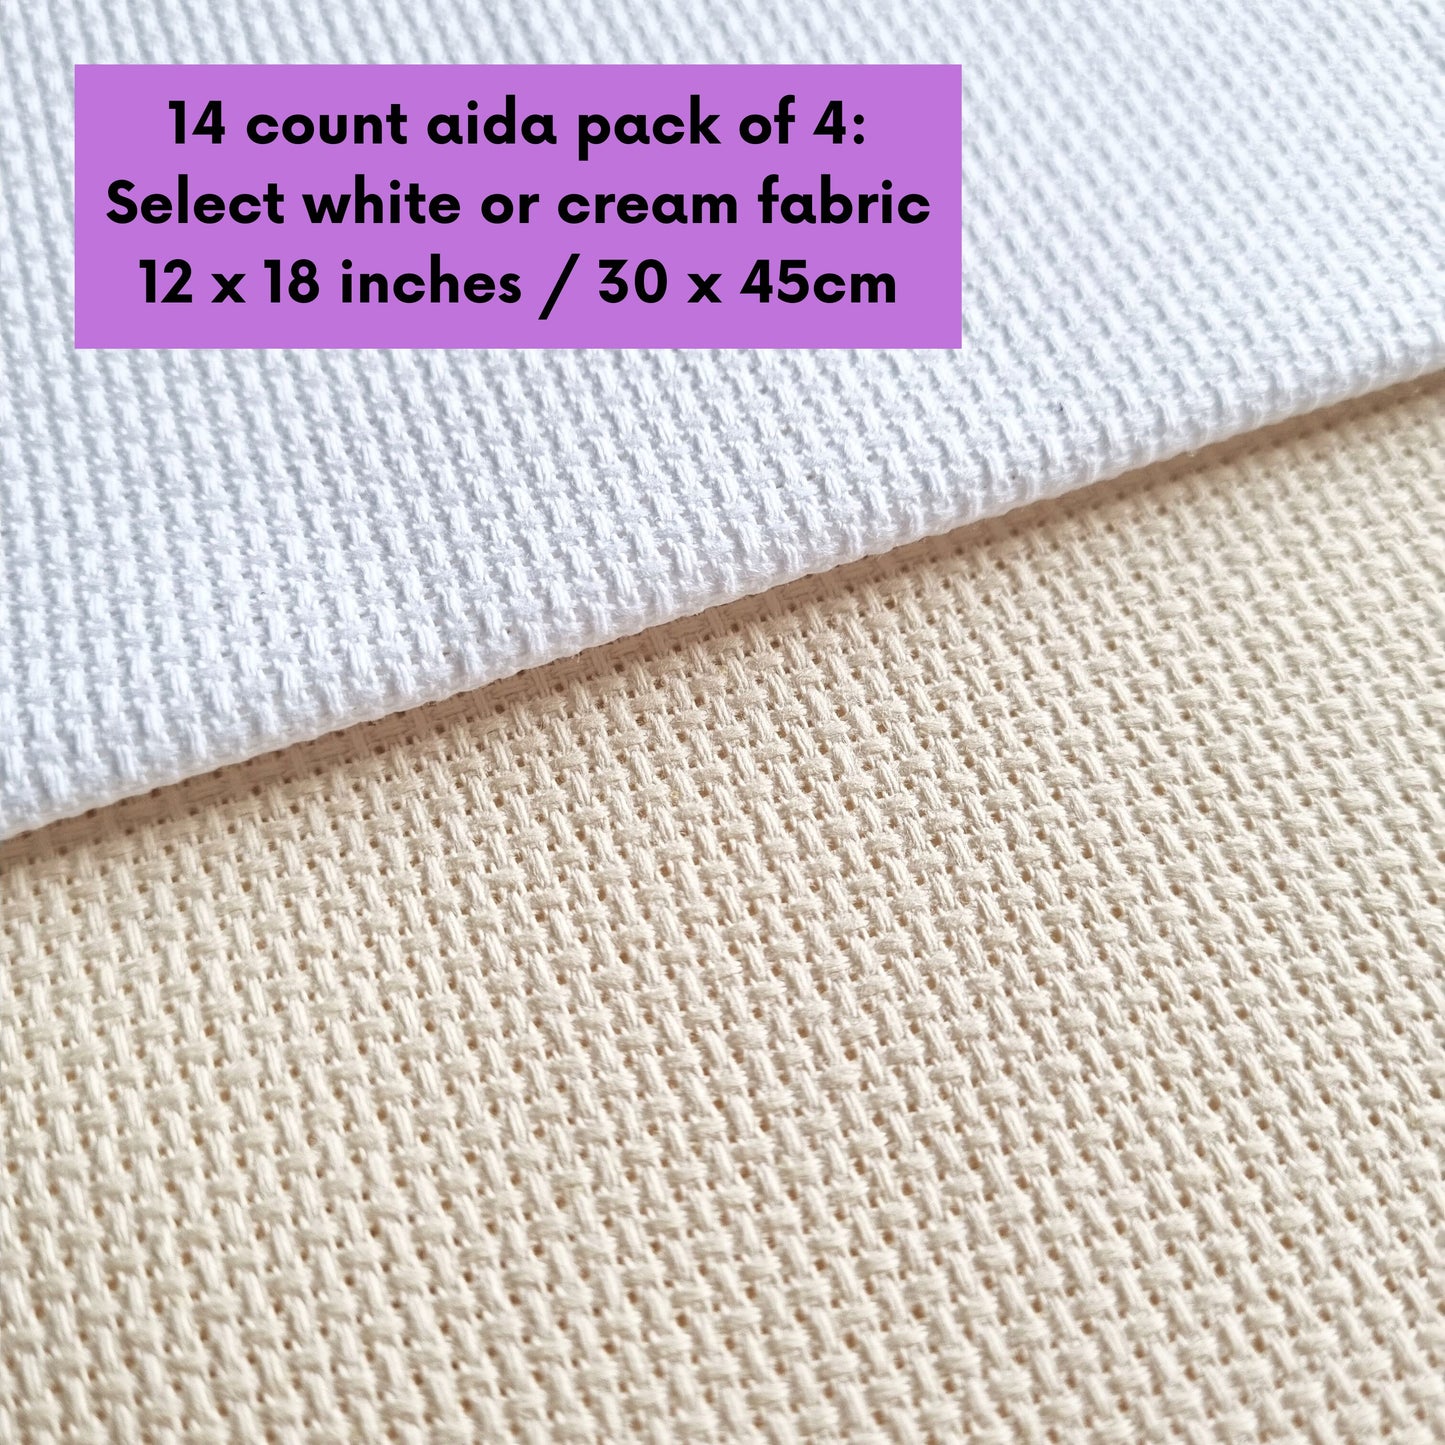 4 Pieces of 14 Count White or Cream Aida Fabric 12 x 18 Inches / 30cm x 45cm